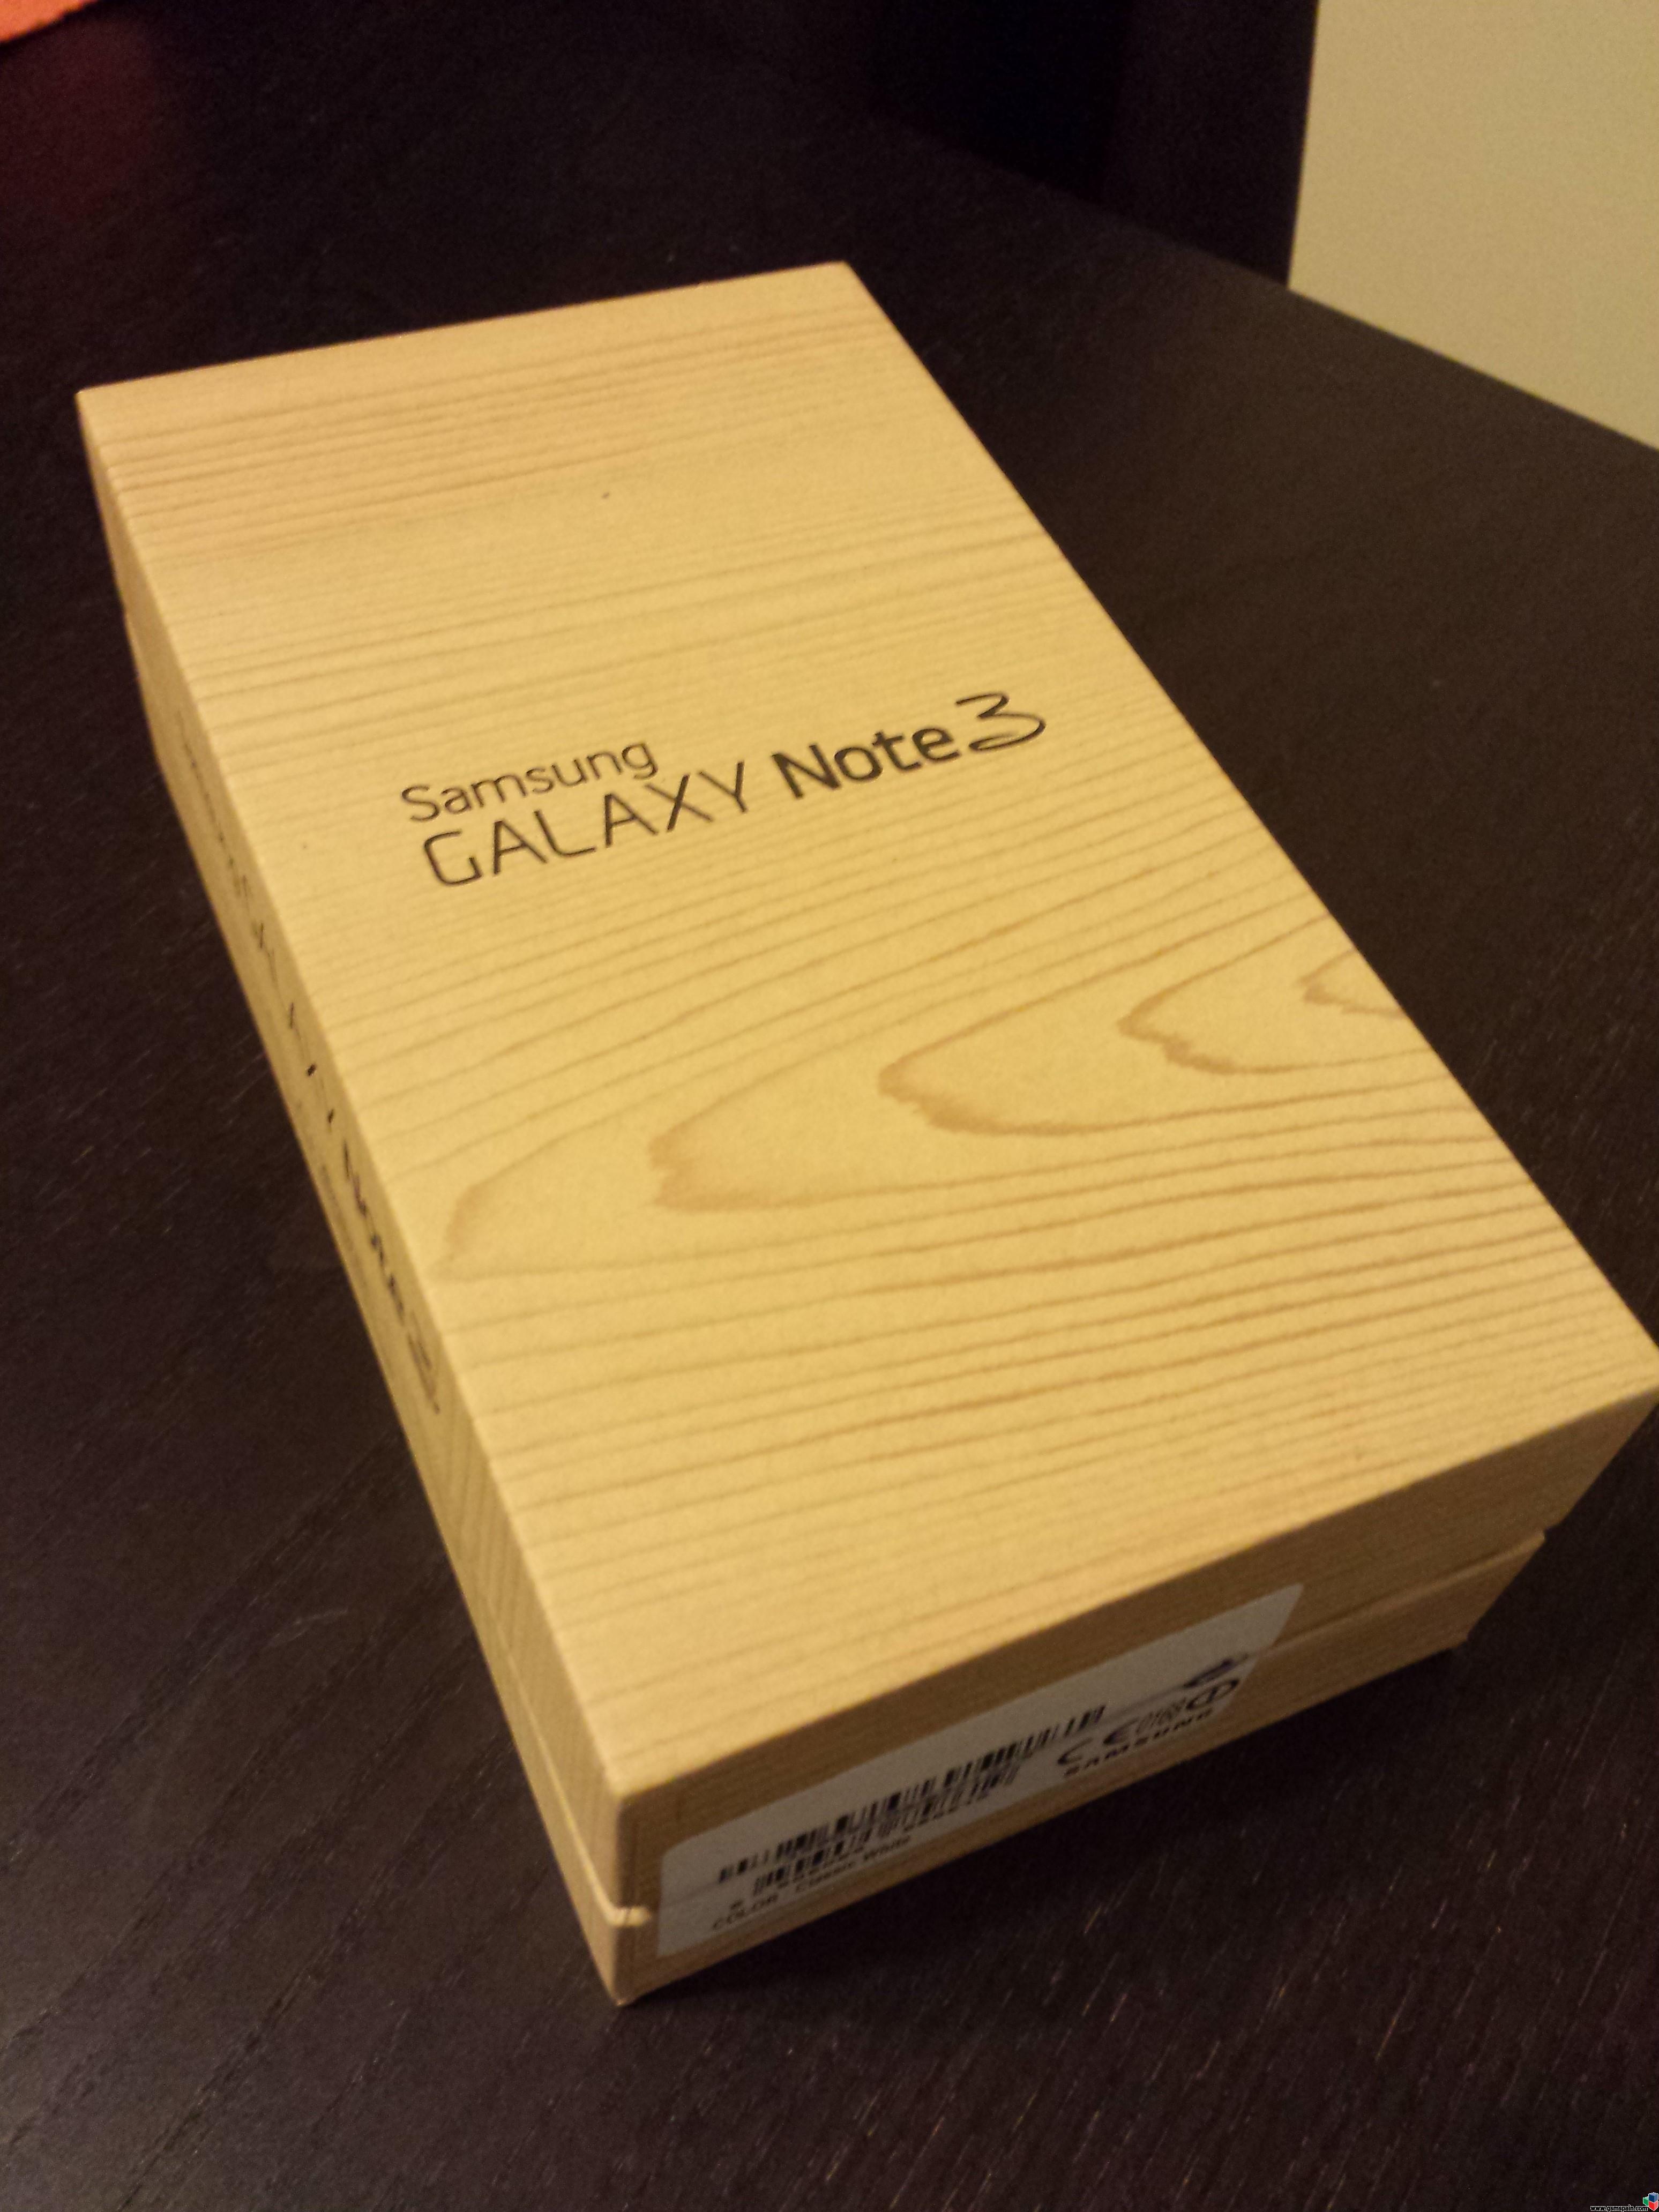 [vendo] Samsung Galaxy Note 3 Blanco 32gb Libre, Con Factura Y Garanta [465 Envo Incluido]